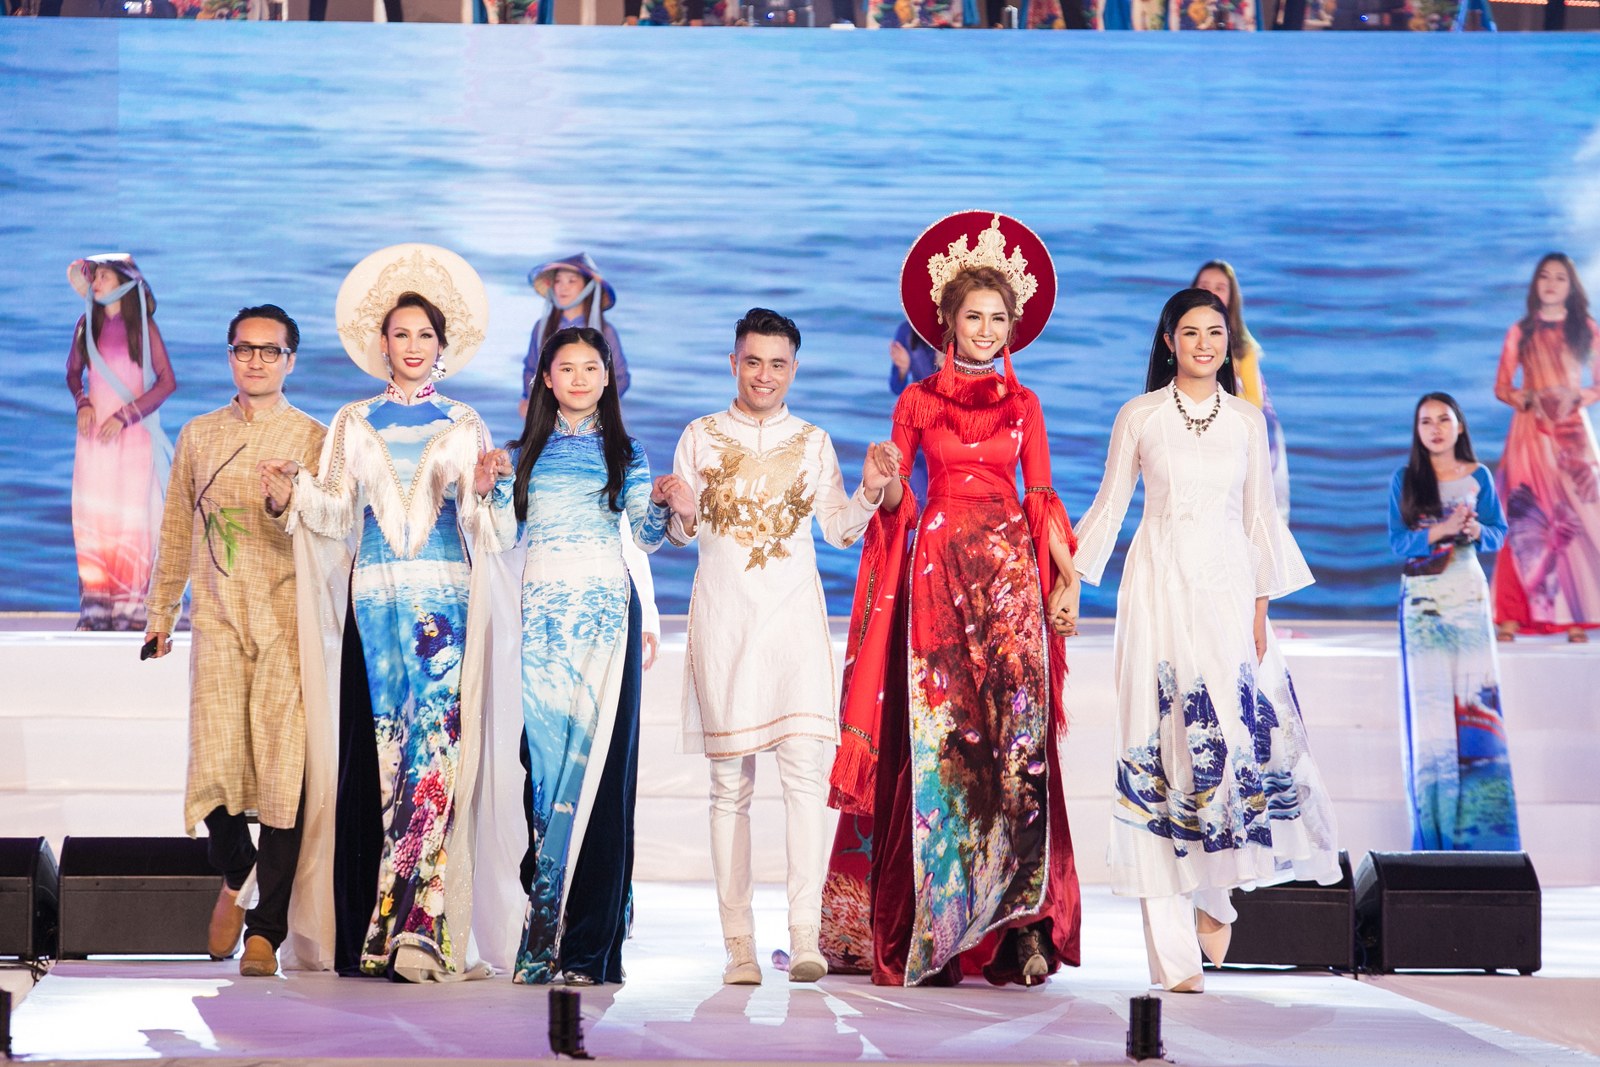 Với thông điệp bảo vệ môi trường biển, NTK Nhật Dũng đã cho ra mắt BST “Ký ức đại dương” vào đúng dịp này để trình diễn trên sân khấu của Festival biển Nha Trang.



